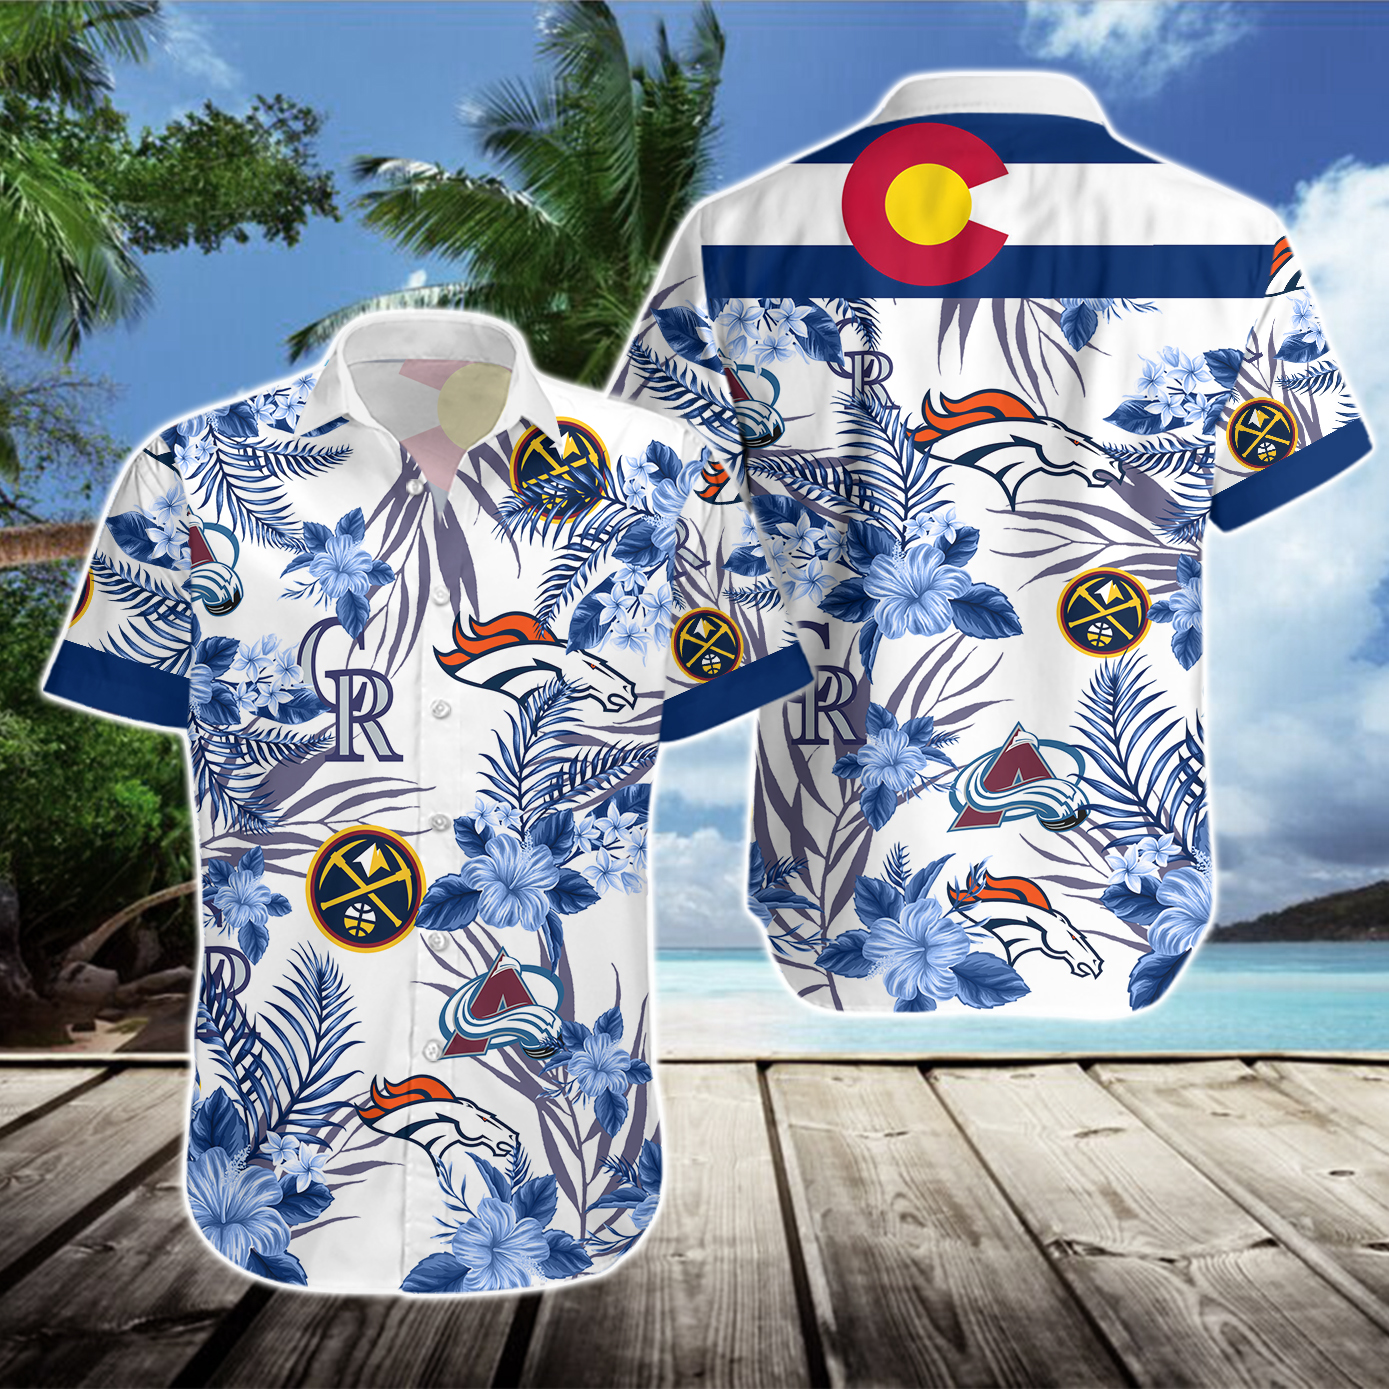 Denver Broncos Denver Nuggets Colorado Rockies Colorado Avalanche Hawaiian Shirt